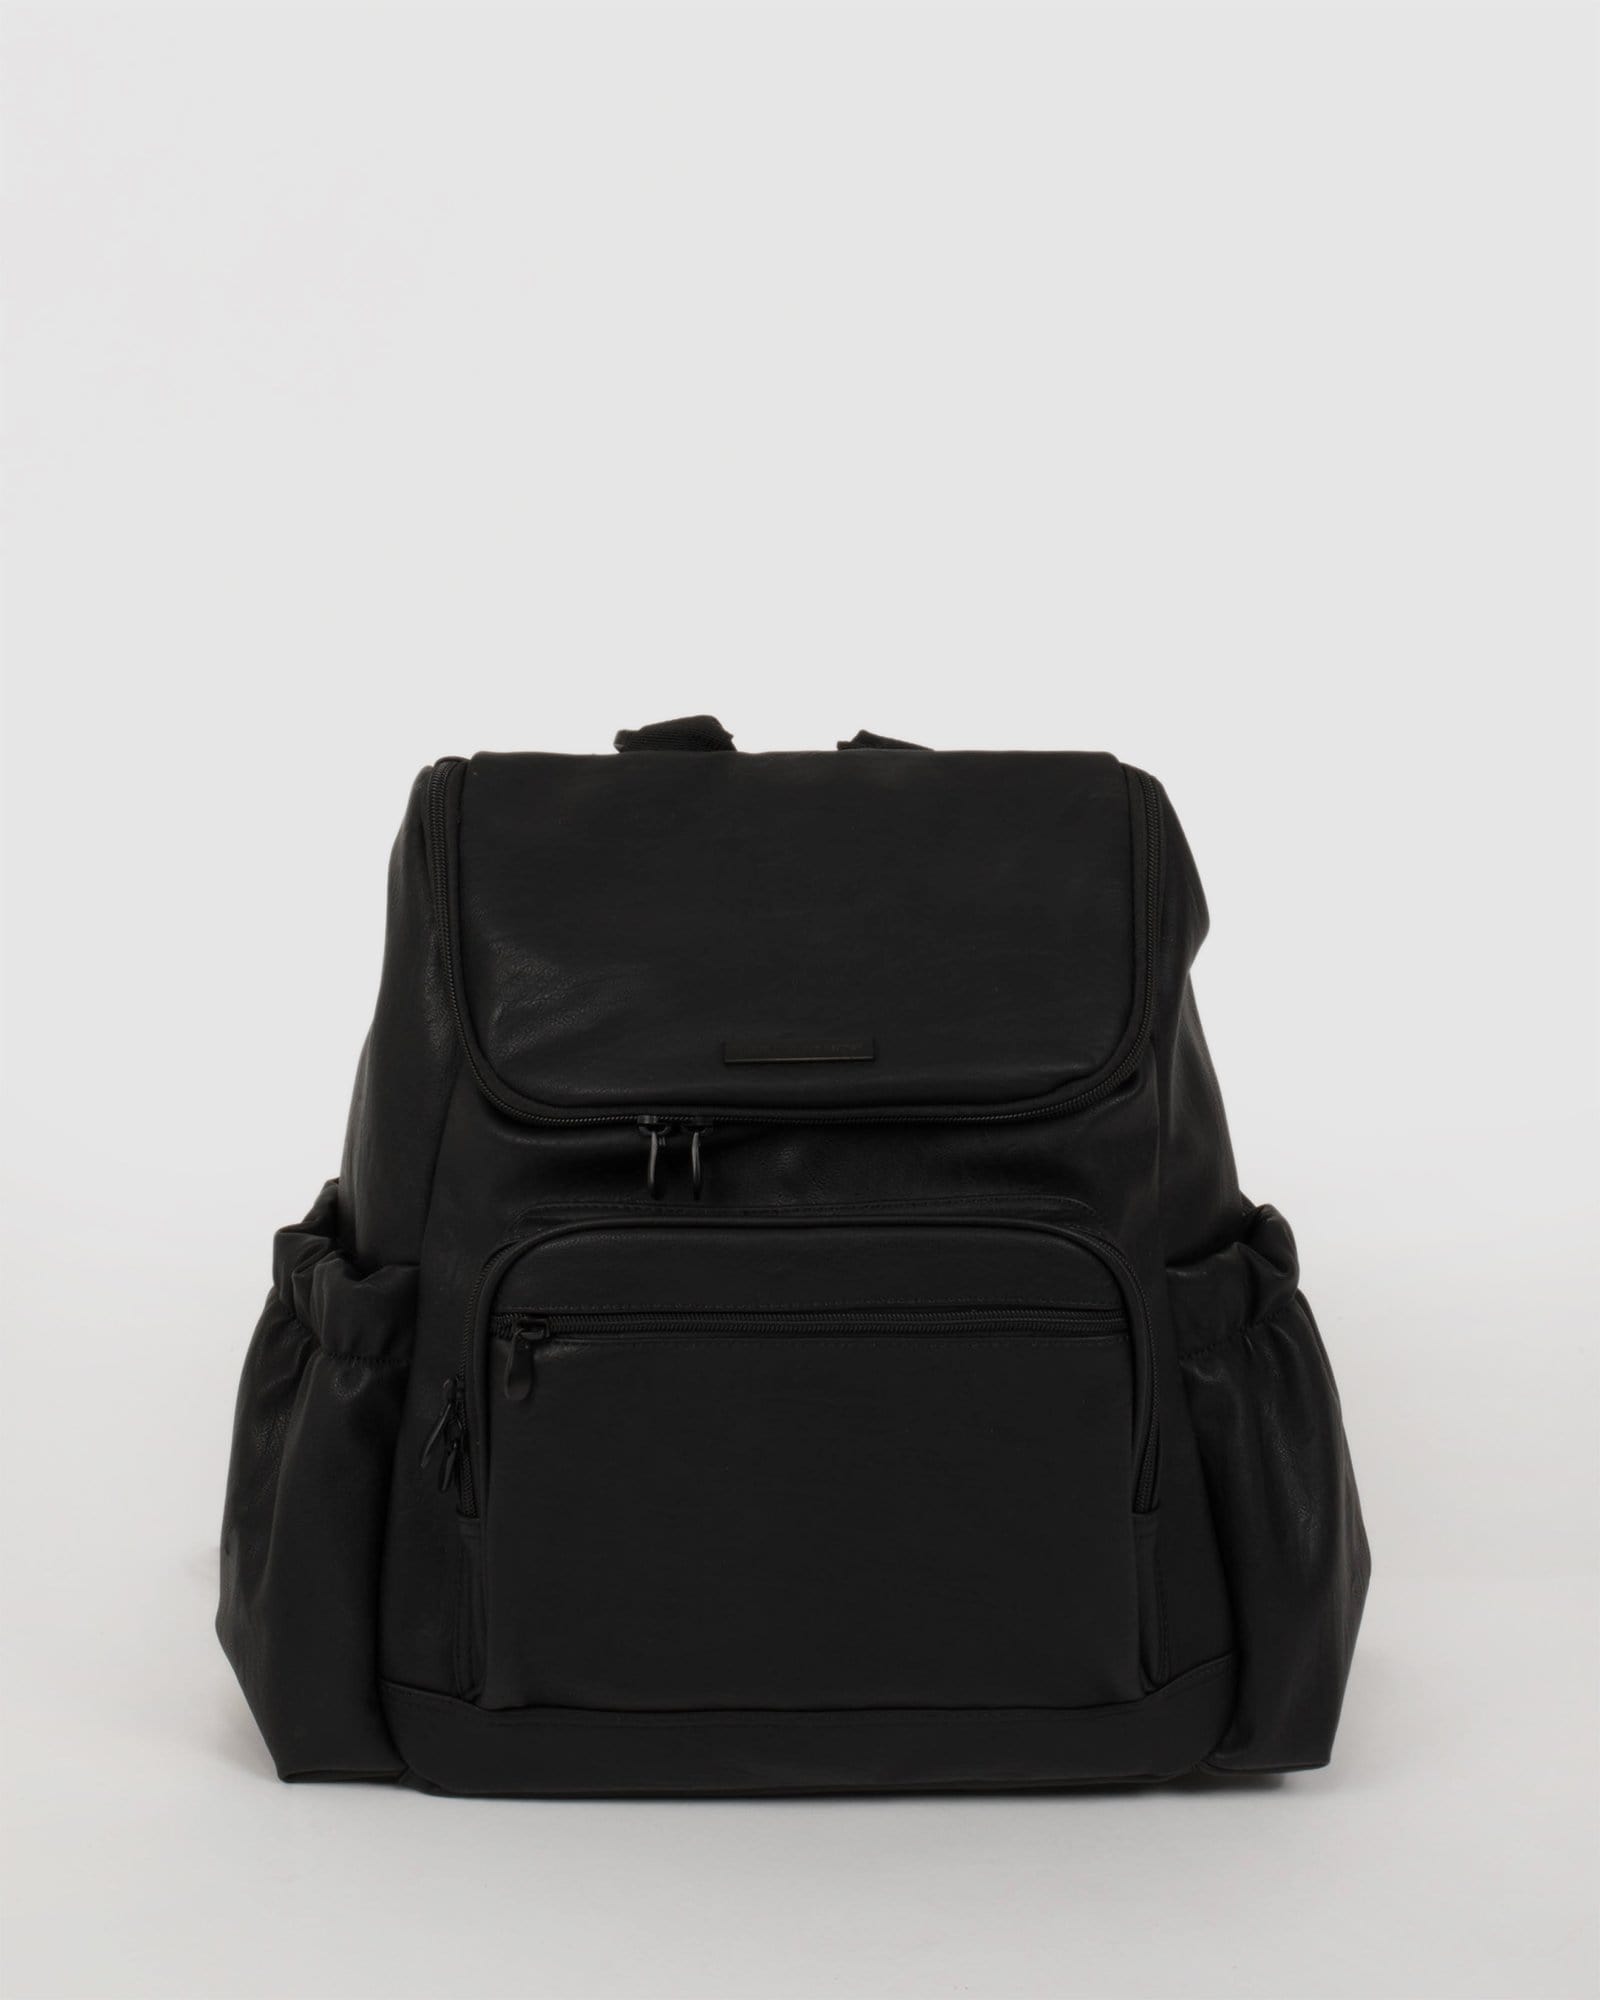 Black Baby Bag Backpack | Baby Bags Online